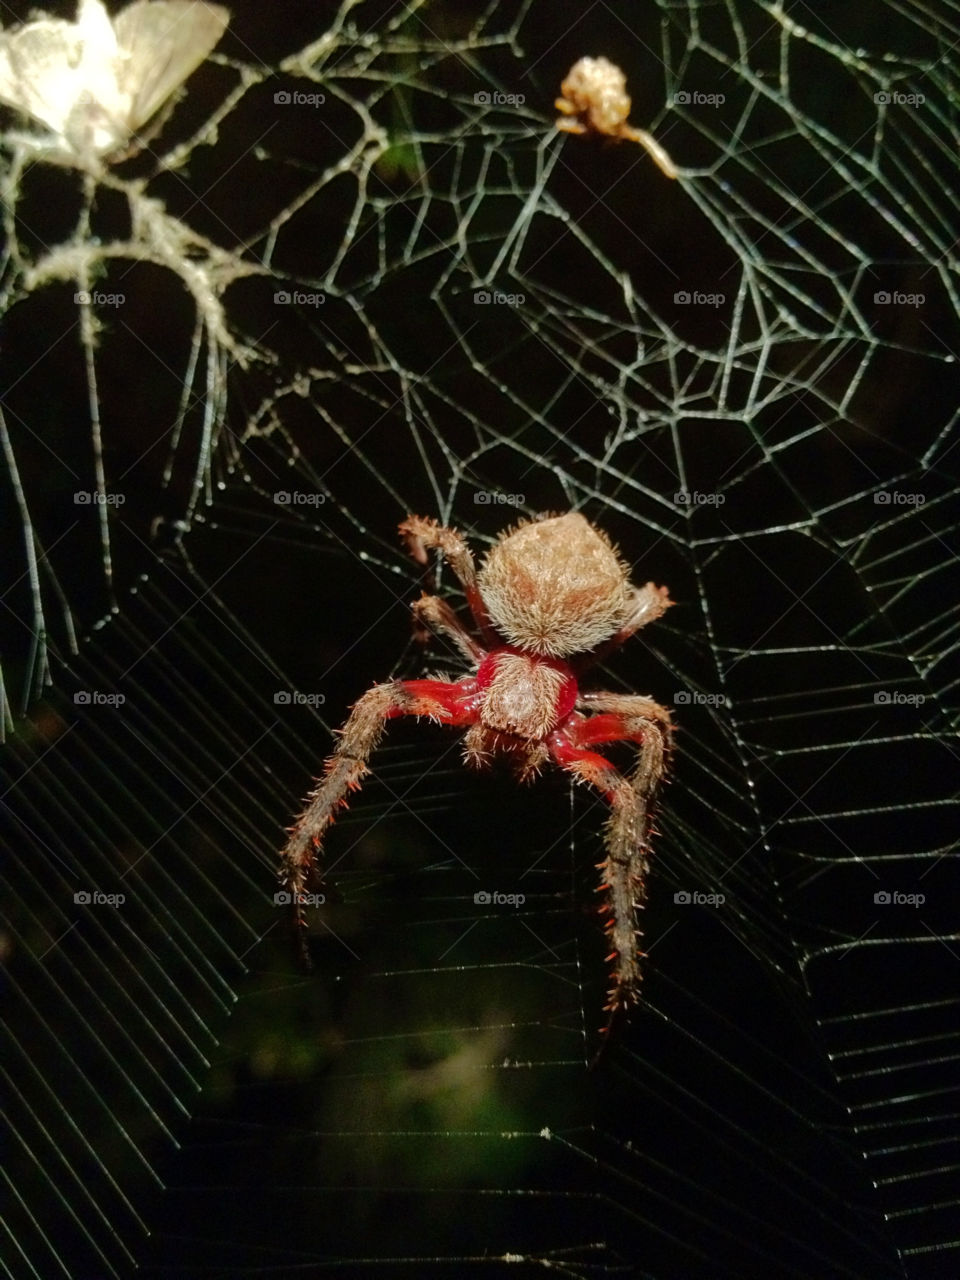 wolf spider spider in web spider closeup web by gdyiudt